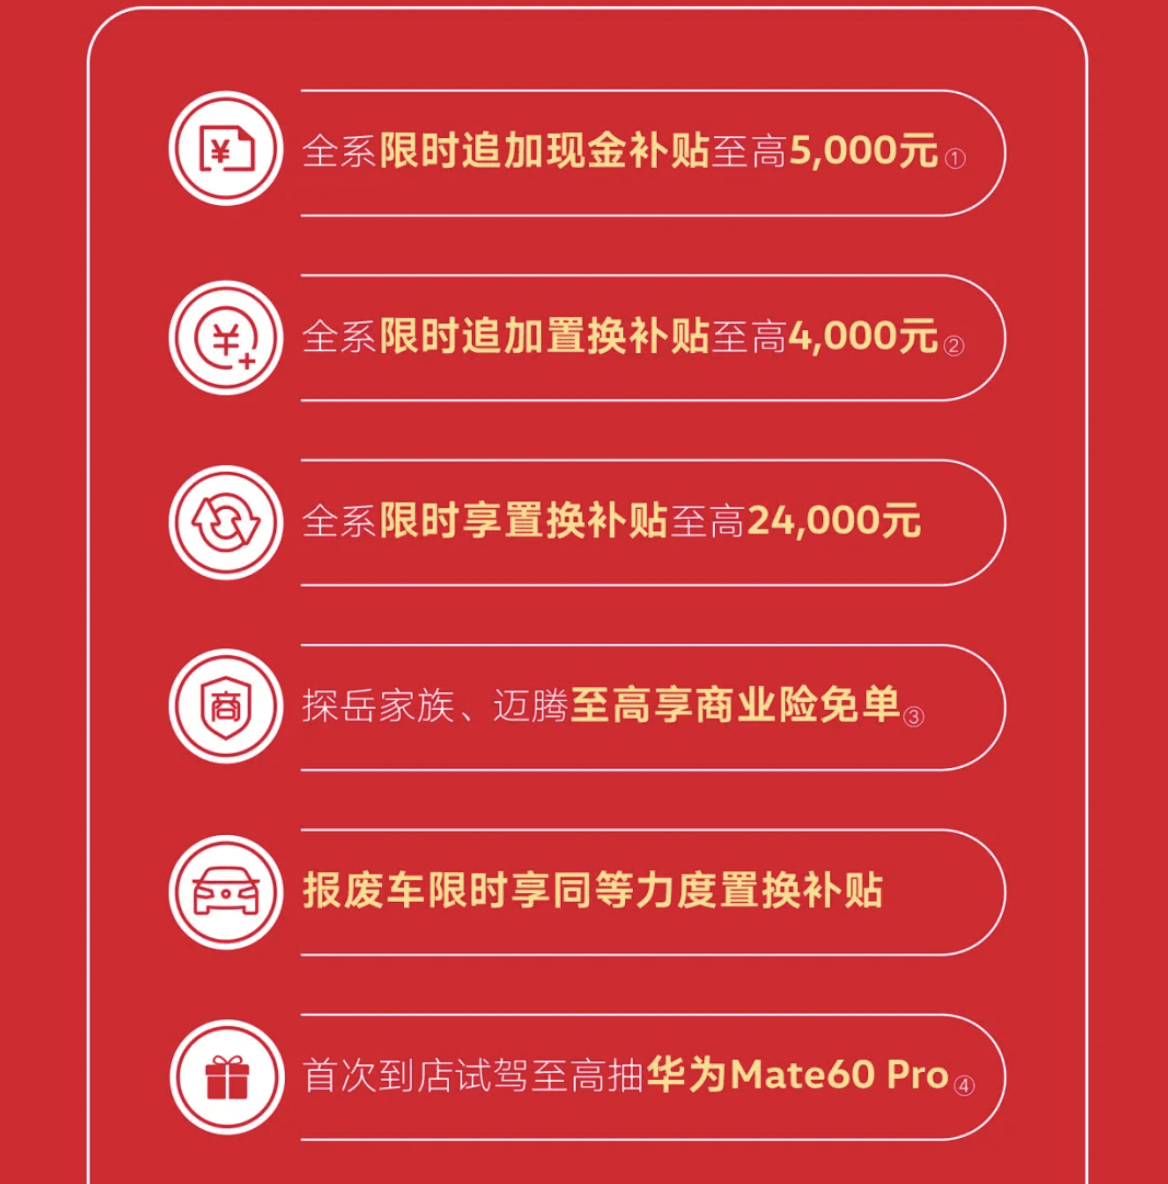 4月1日至4月23日一汽-大众将限时获得额外补贴_搜狐汽车_ Sohu.com。